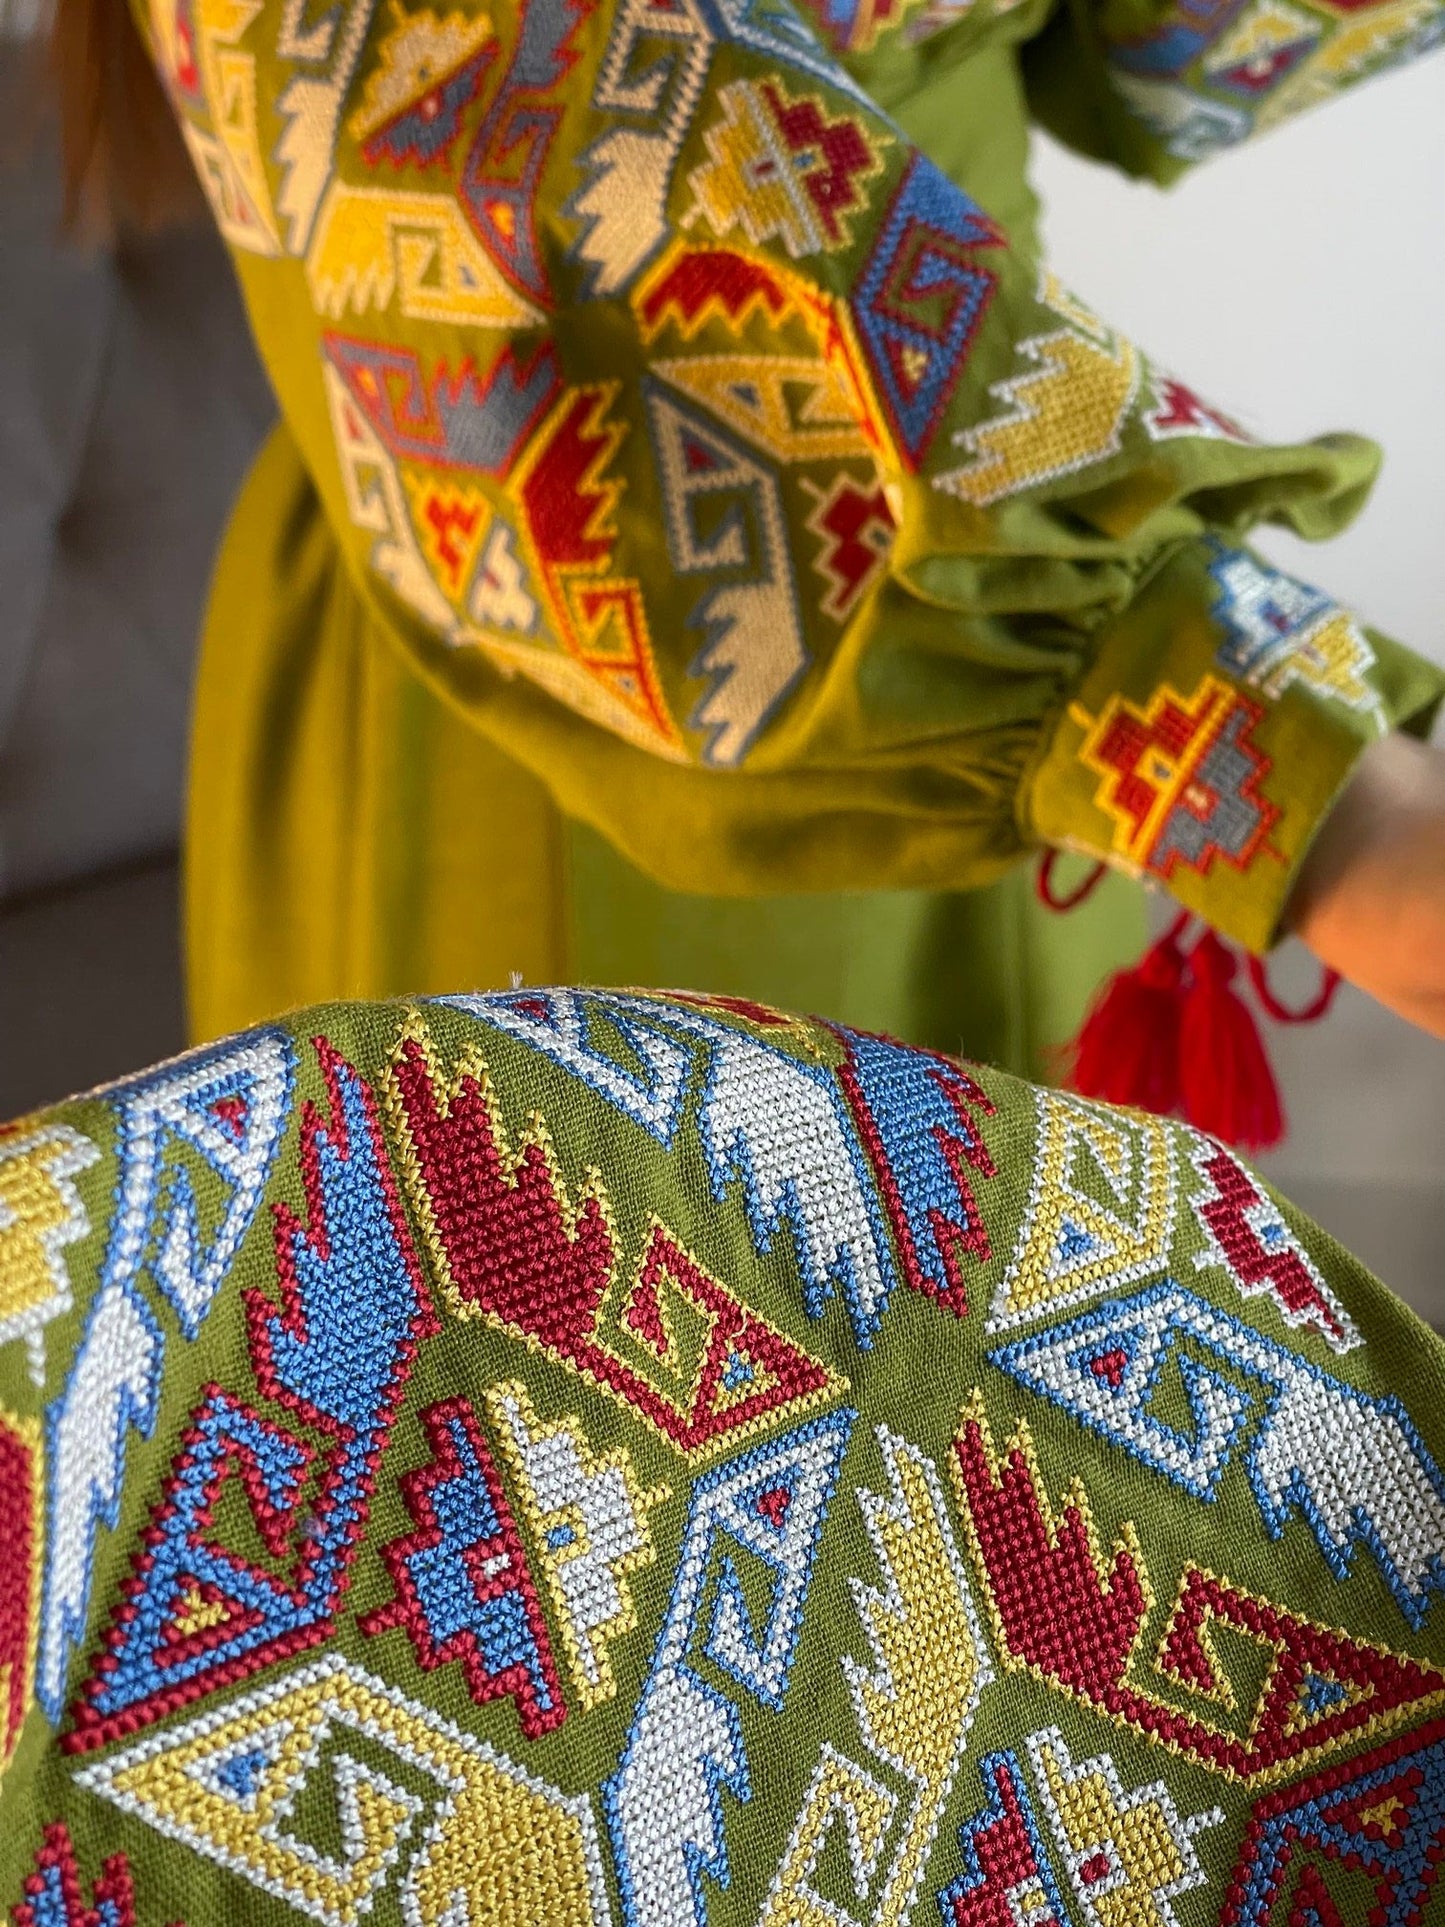 Verdant Harmony: The Whimsical Salad Green Ukrainian Vyshyvanka Dress with Vibrant Embroidery - Vatra